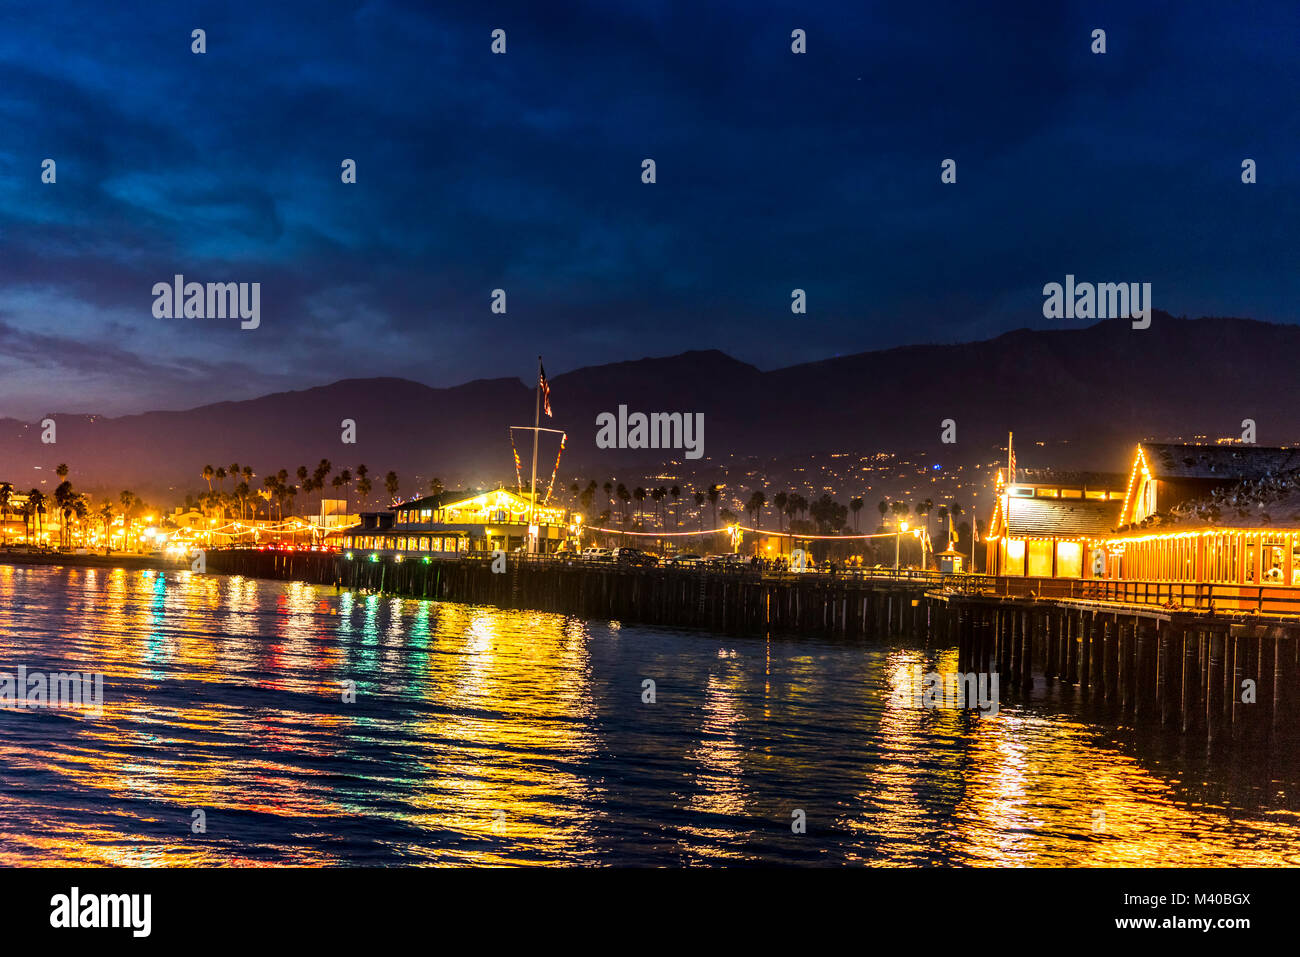 Immagine di Stearns Wharf in notturna a Santa Barbara in California mostra le luci brillanti di una vivace città di destinazione. Foto Stock